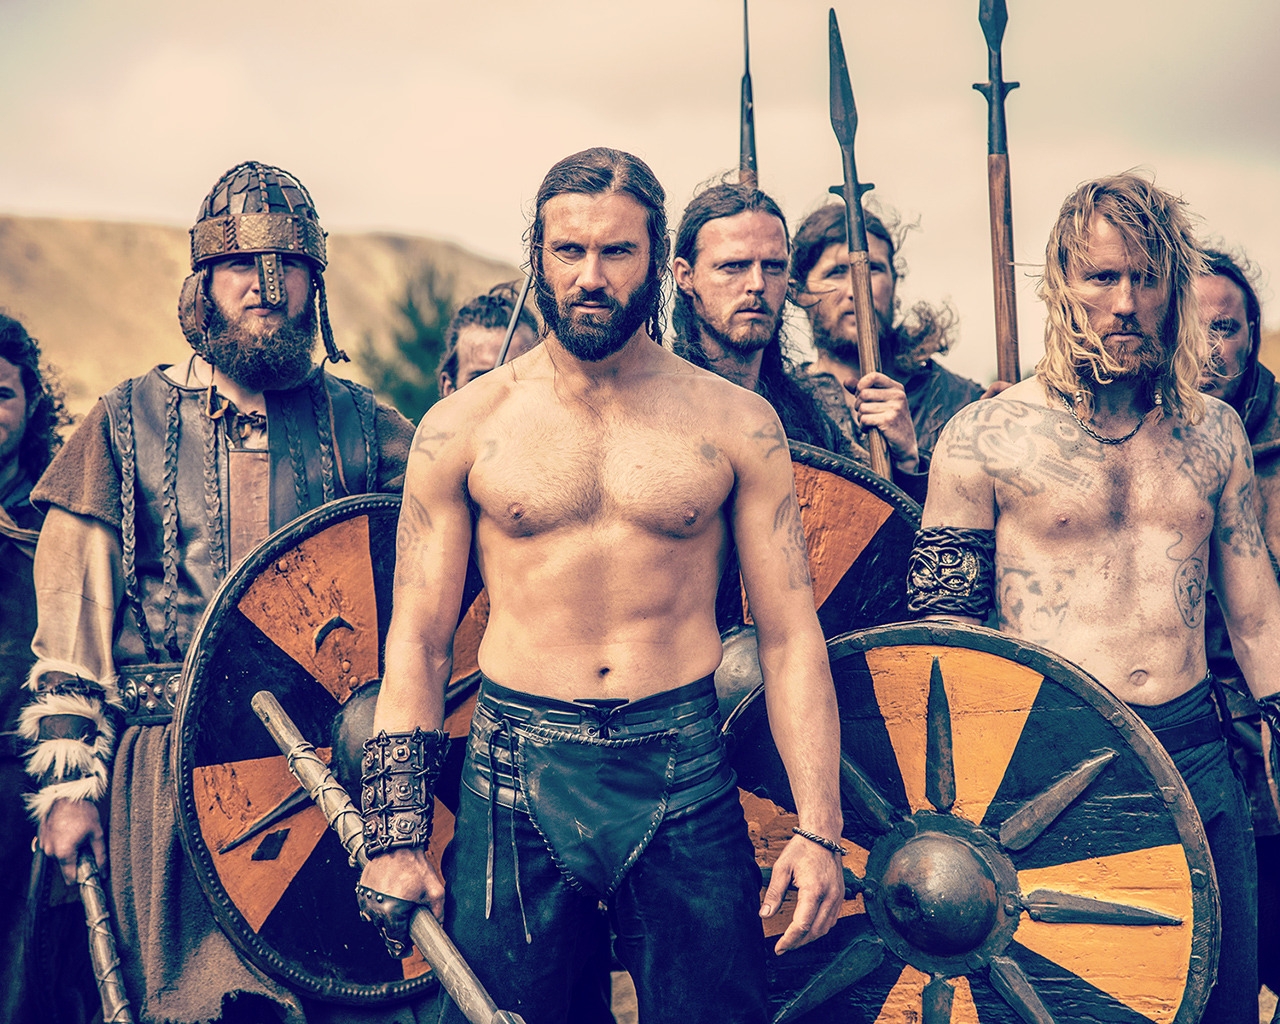 Vikings Season 2 Scene for 1280 x 1024 resolution